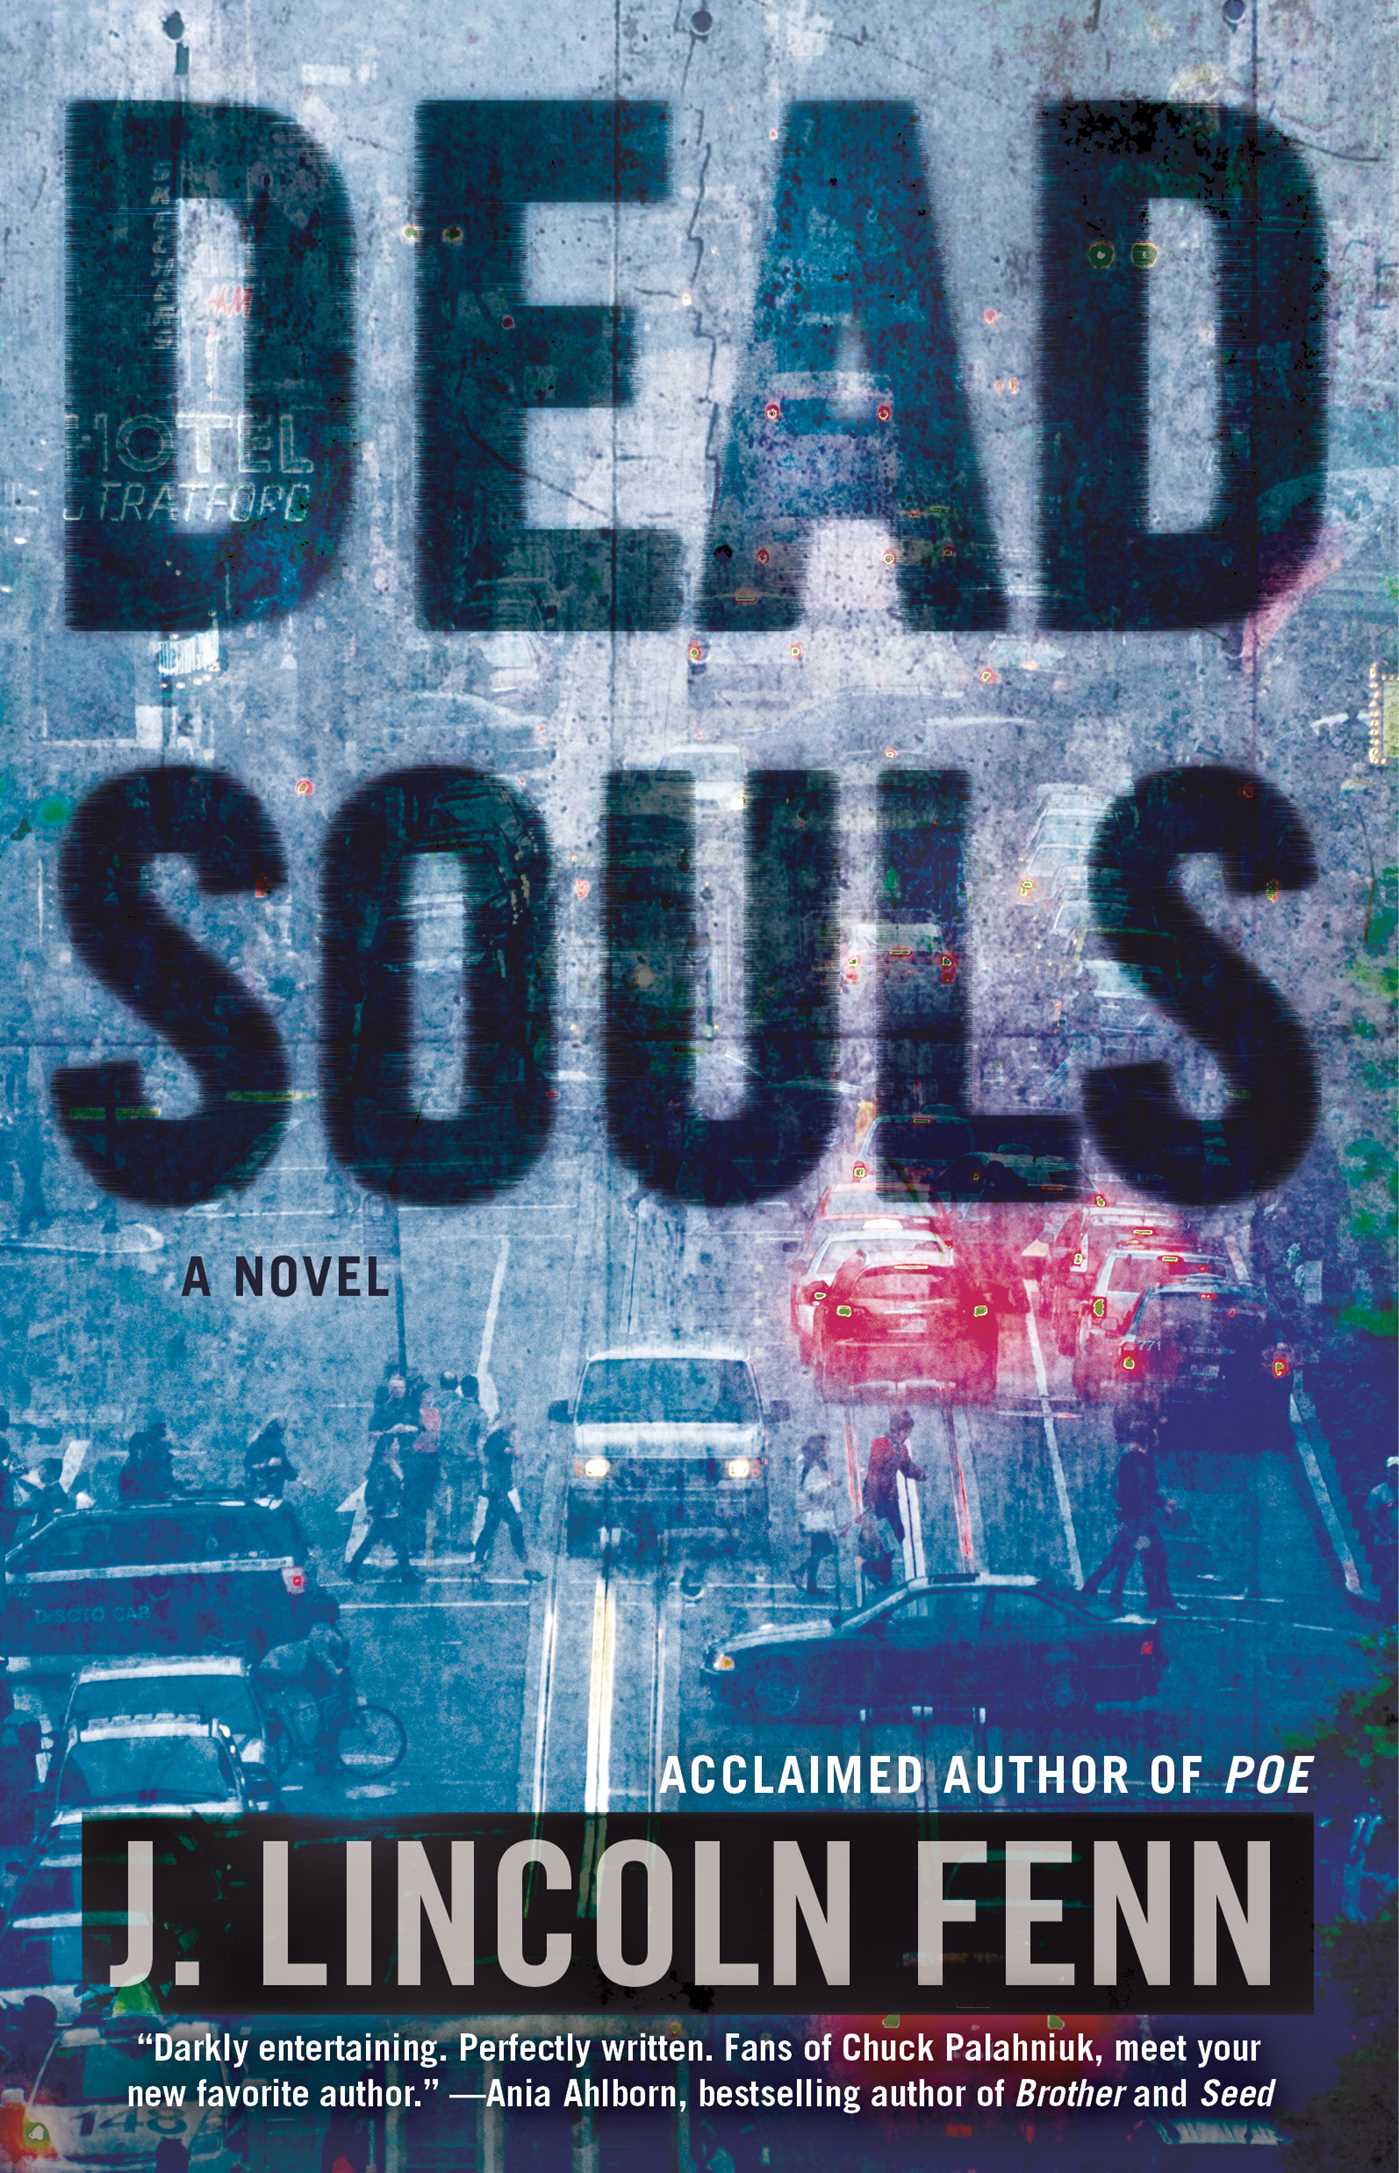 Dead Souls book